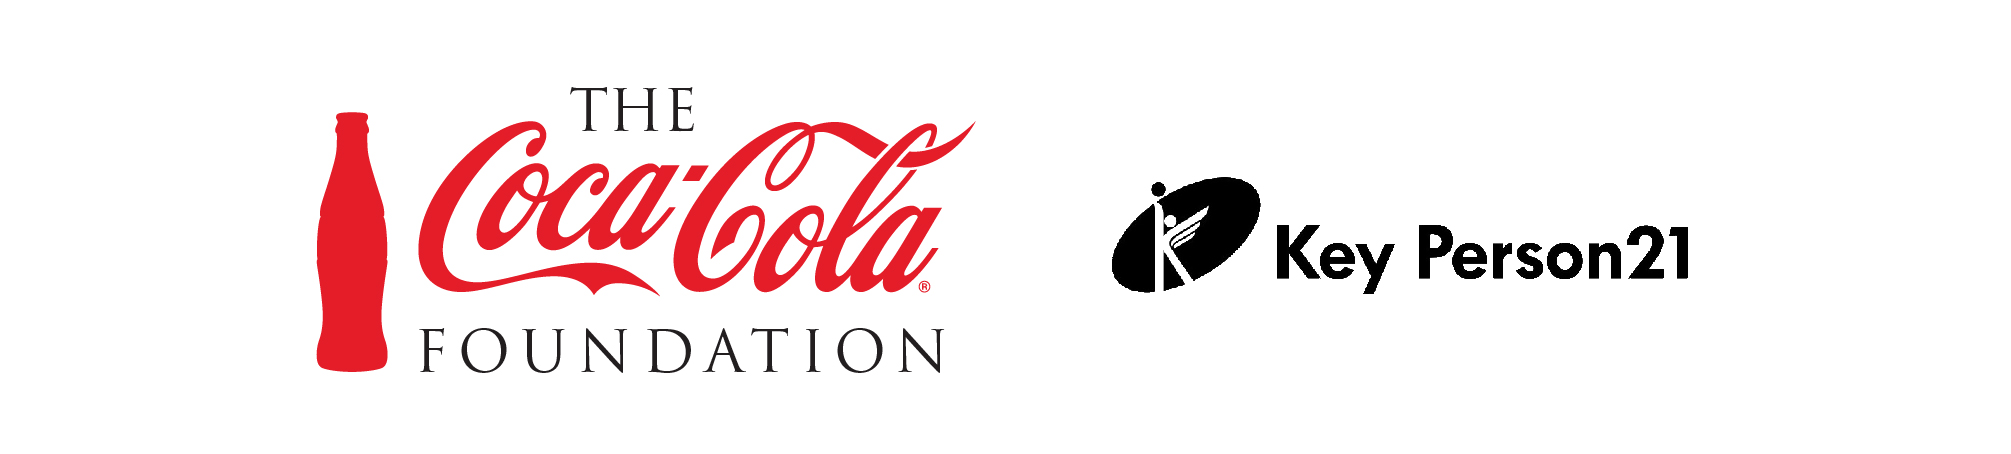 米国コカ・コーラ財団との協働プロジェクト